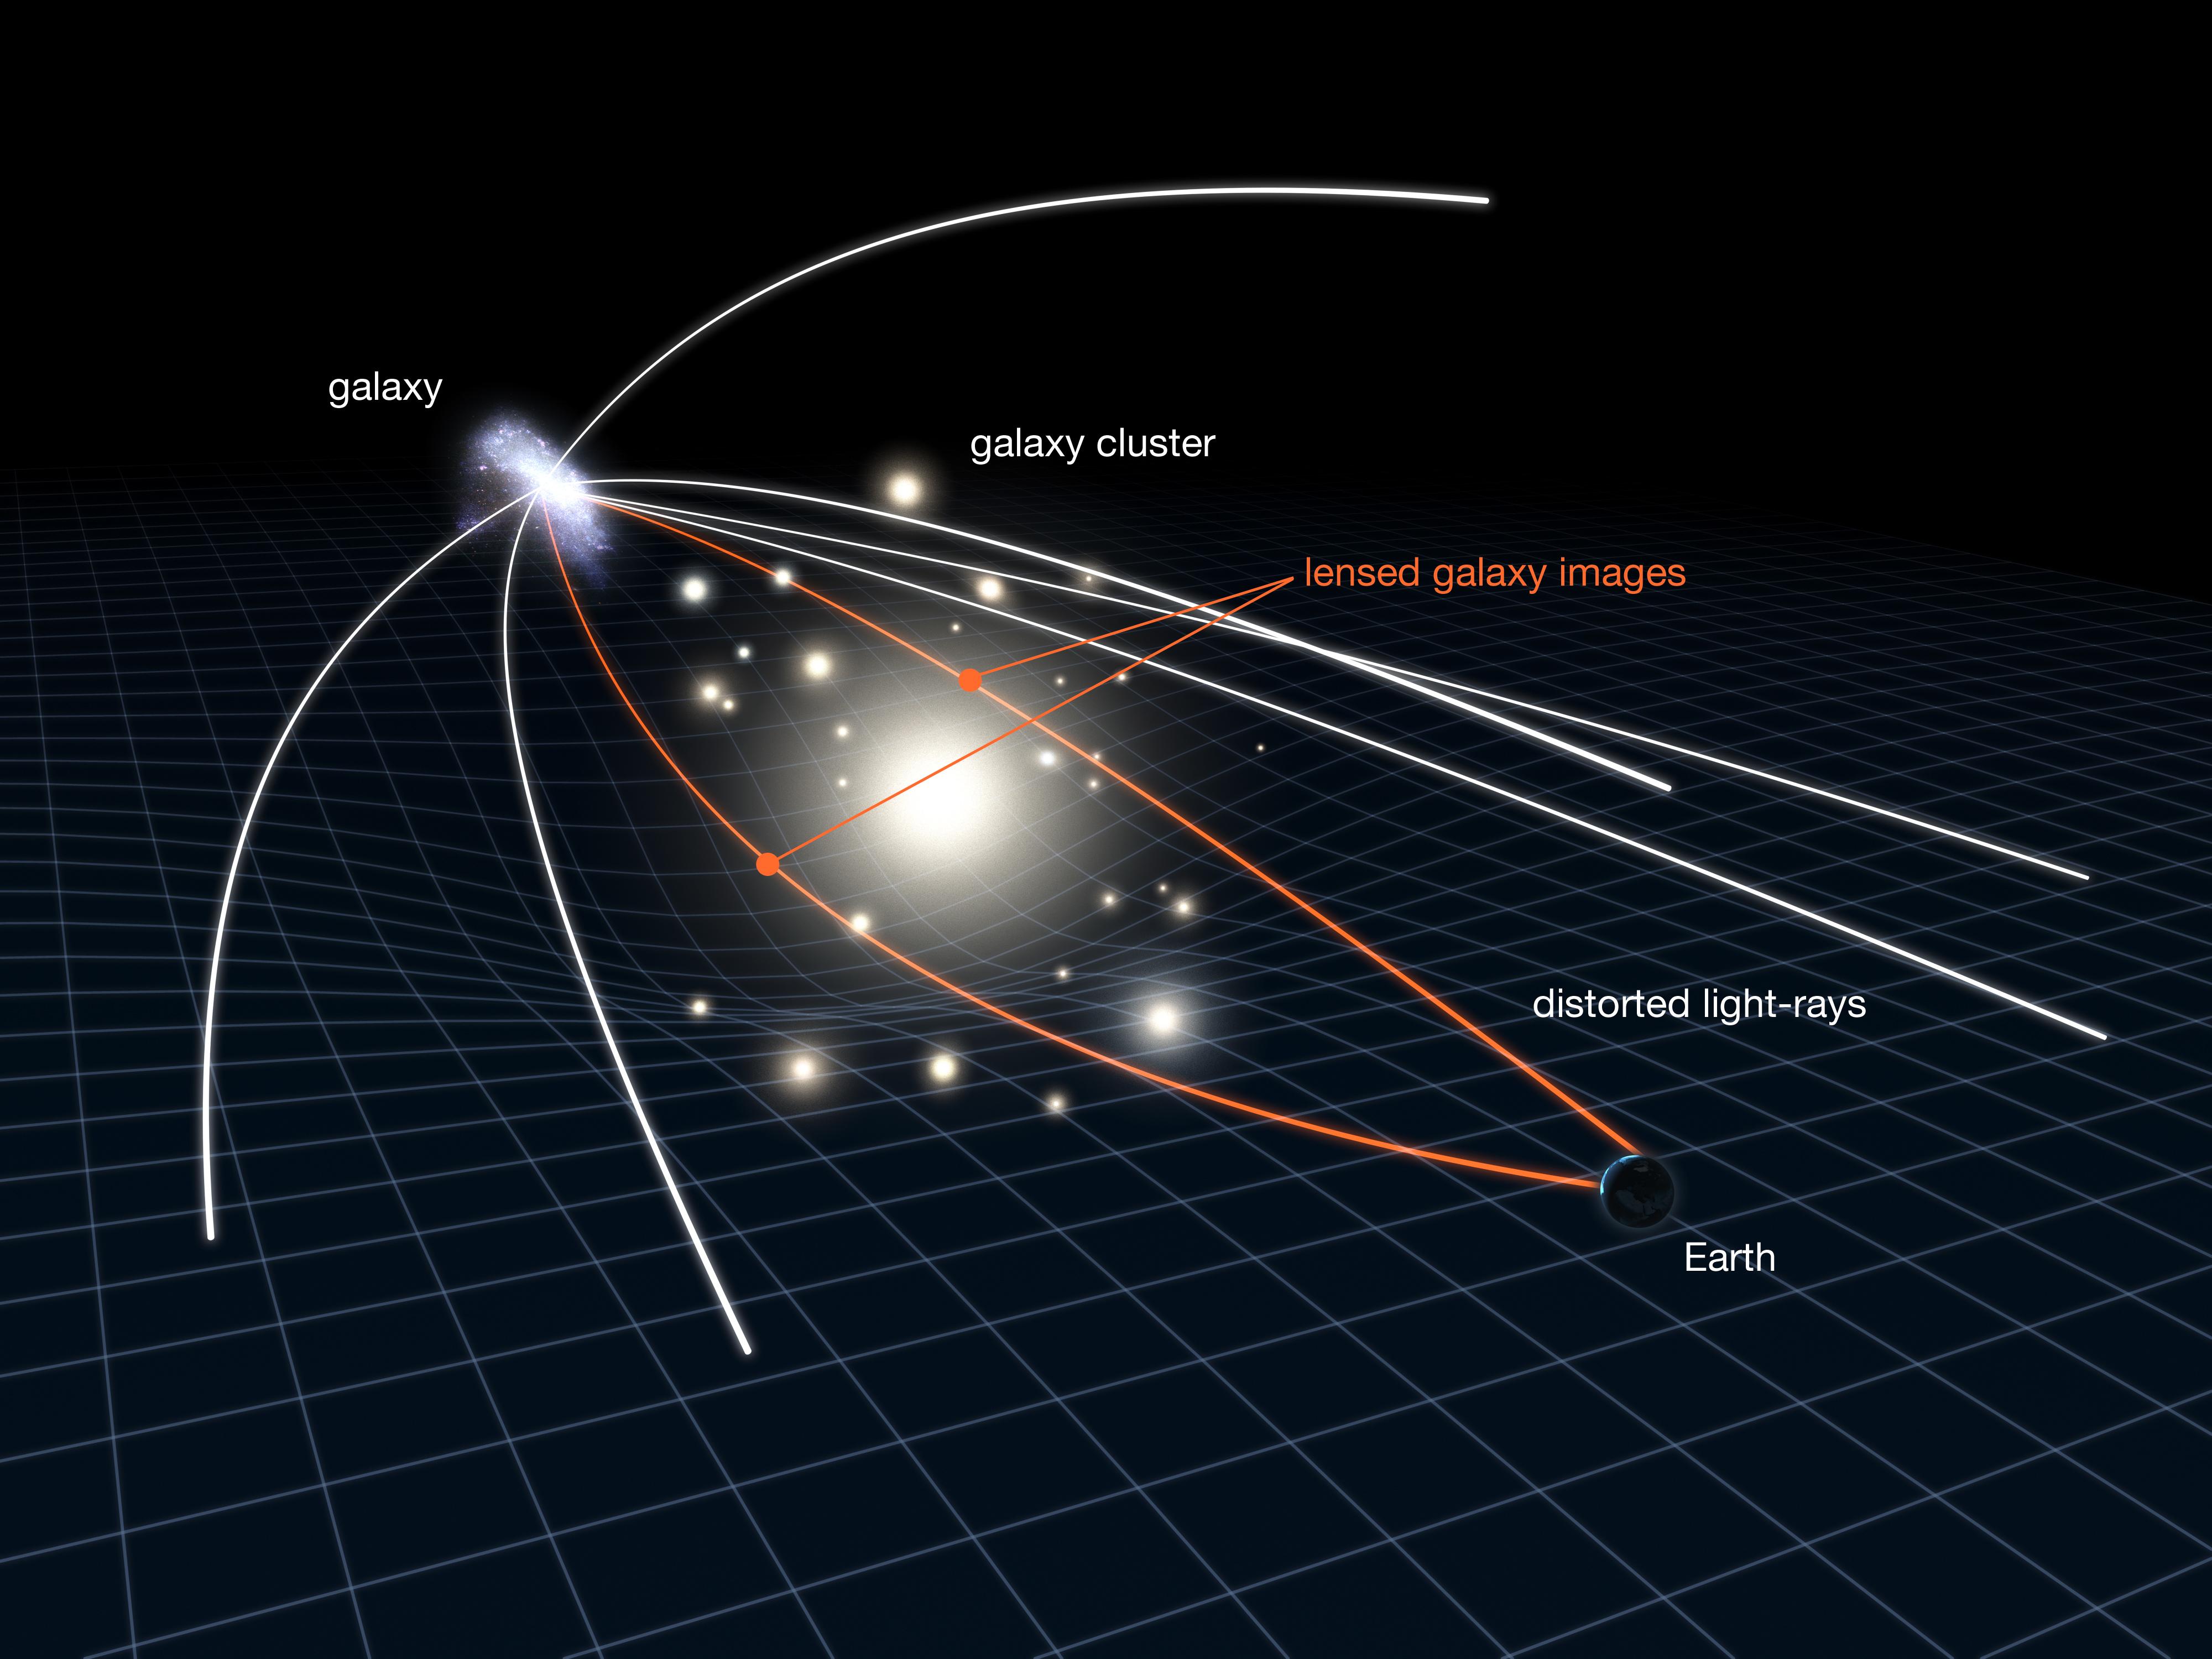 Une lentille gravitationnelle est utilisé par les astronomes pour étudier des galaxies très éloignées et très peu lumineuses, comme celle se trouvant en haut à gauche. Ici, l'échelle a été fortement exagérée: en réalité, cette galaxie est beaucoup plus éloignée et petite. Entre l'observatoire sur Terre et cette très lointaine galaxie, un amas de galaxies elliptiques – dont la gravité est très forte – courbe l'espace-temps; la lumière (en blanc) va suivre cette courbure et produire des images déformées et souvent multiples de la galaxie d'arrière-plan (en orange). Malgré la distorsion, un effet de loupe est produit: les astronomes peuvent obtenir des informations qui ne seraient pas disponibles sans cet effet de lentille gravitationnelle. [NASA/ESA - L. Calçada]